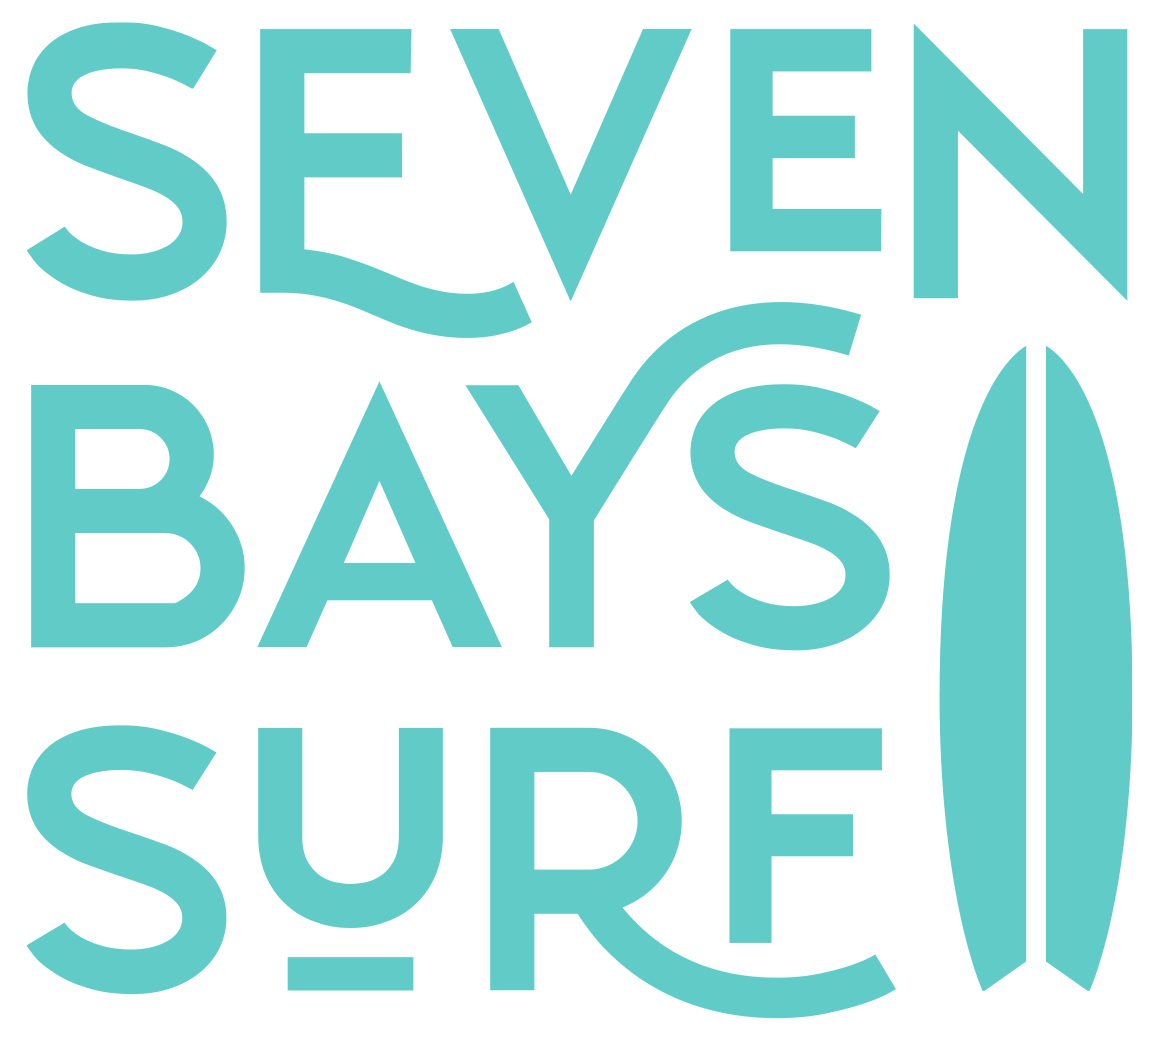 Seven Bays Surf